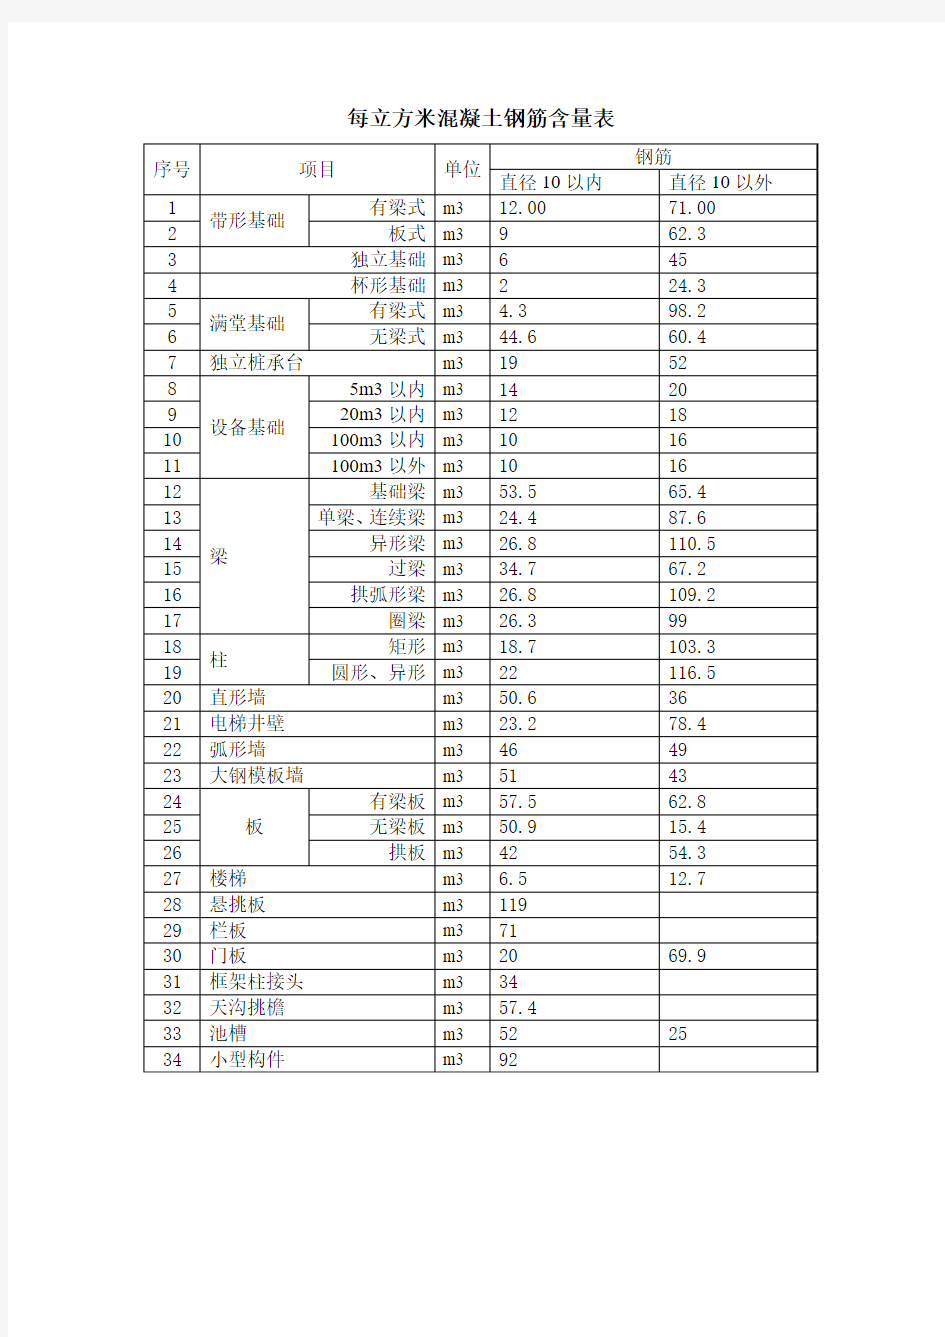 每立方米混凝土钢筋含量参考表(kg)